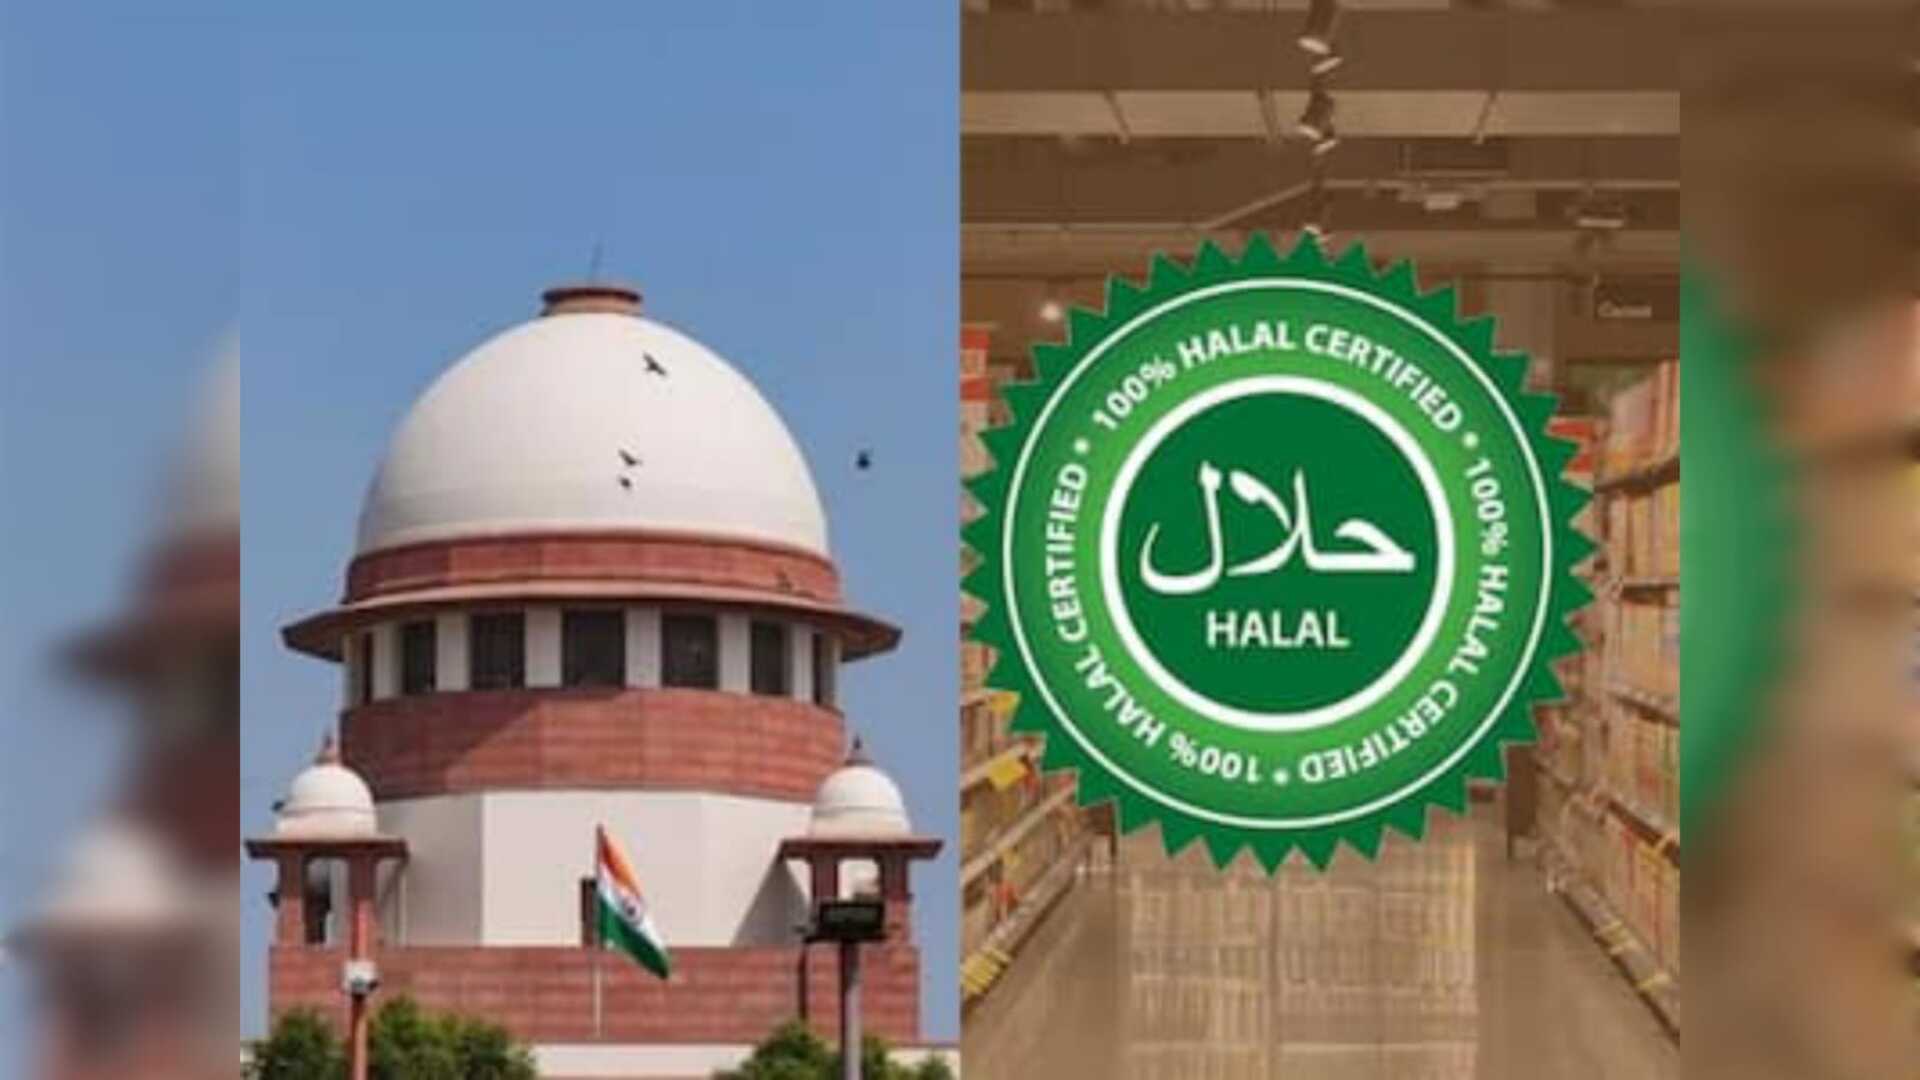 Halal Certificate वाले प्रोडक्ट की बिक्री पर क्यों लगाई रोक? सुप्रीम कोर्ट ने उत्तर प्रदेश सरकार से मांगा जवाब, जानें पूरा मामला